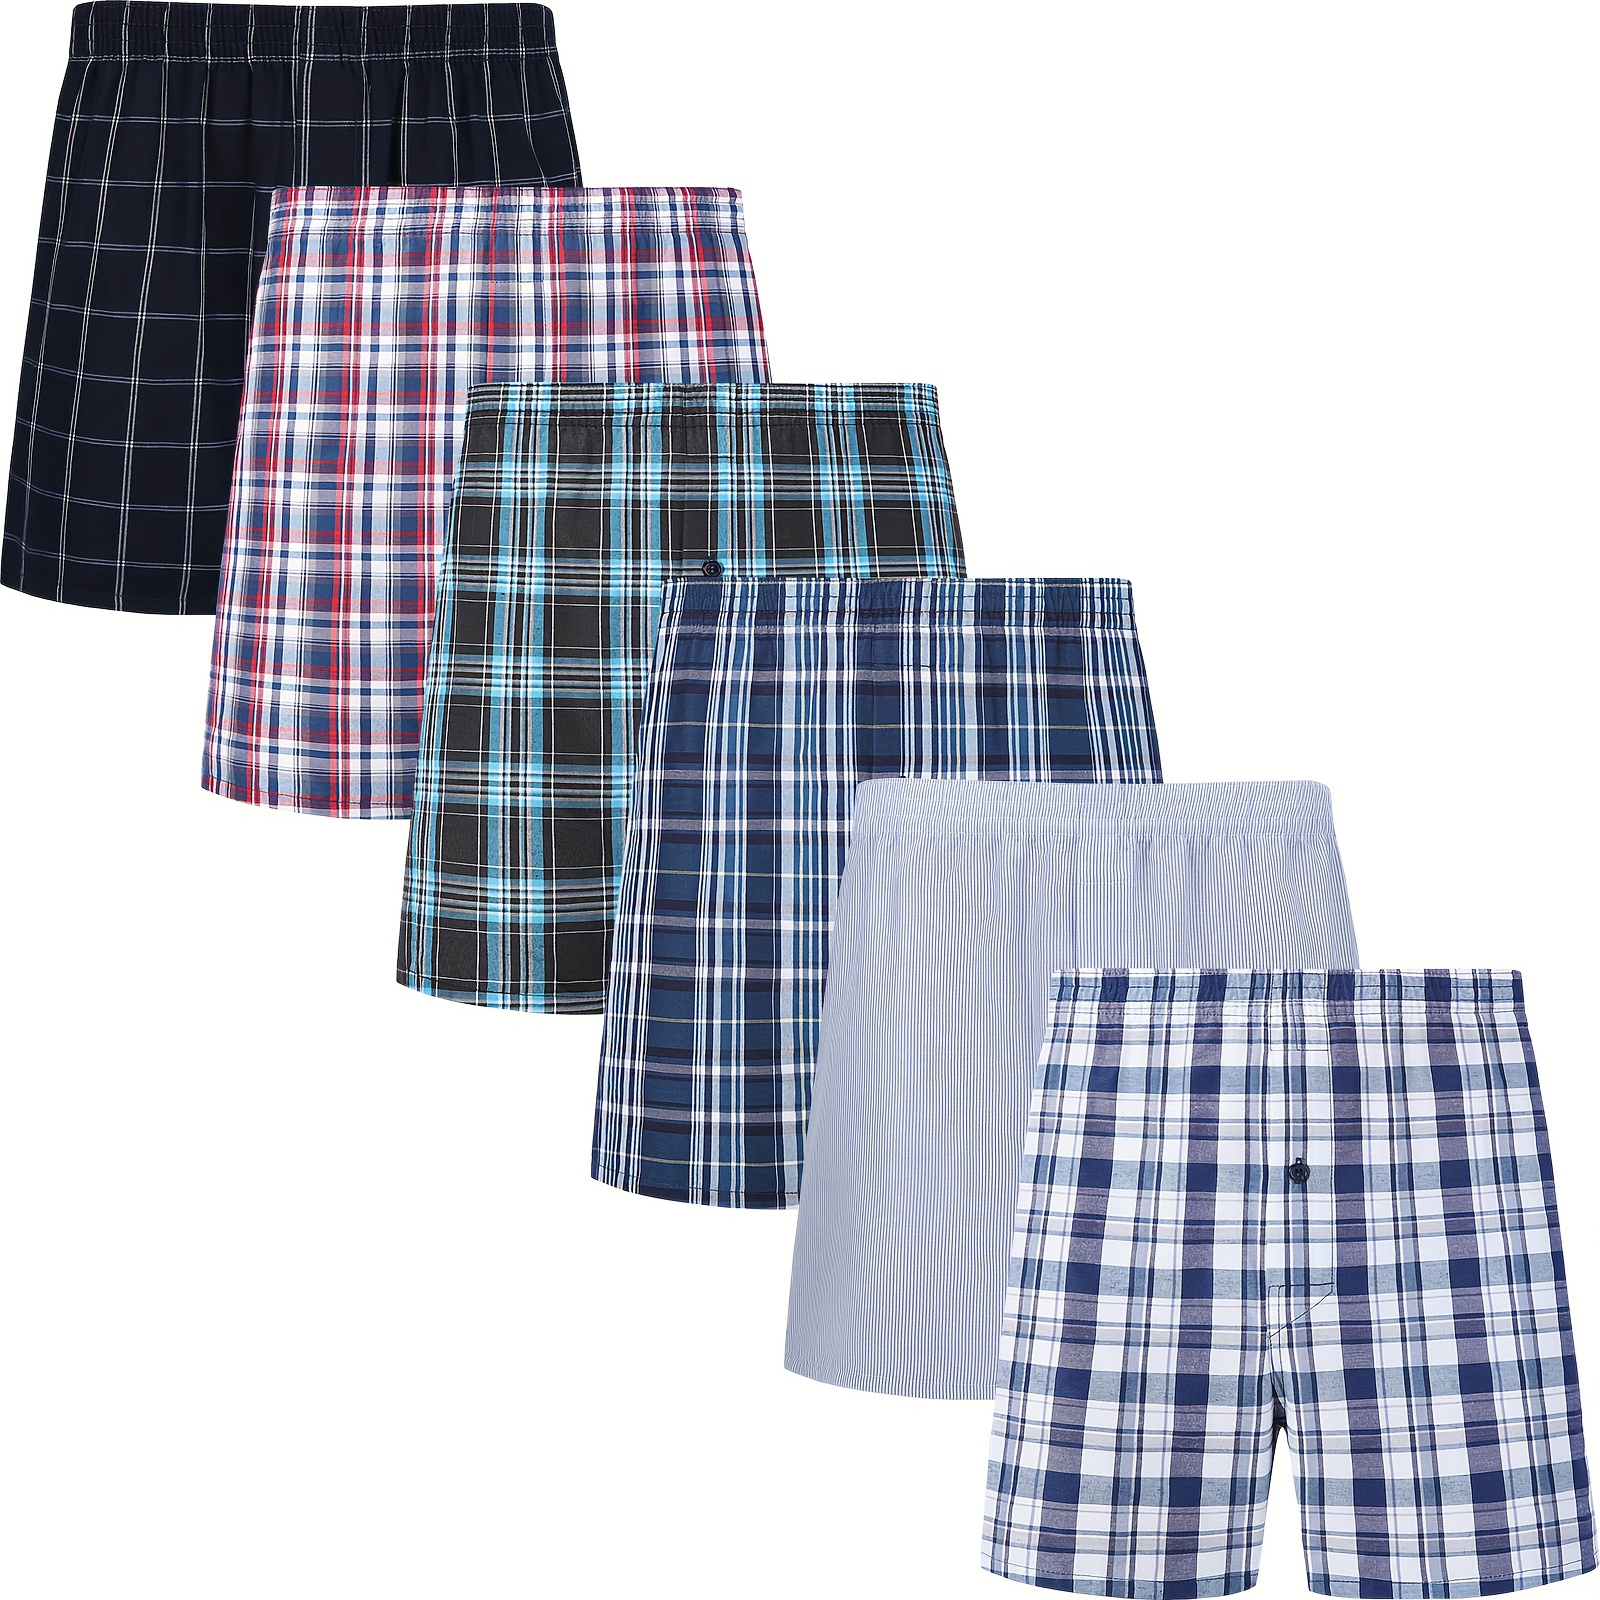 

6 Pcs Plus Size Men's Trendy Classic Plaid Boxer Shorts, Casual Comfy Shorts Arrow Pants Loose-fit Shorts